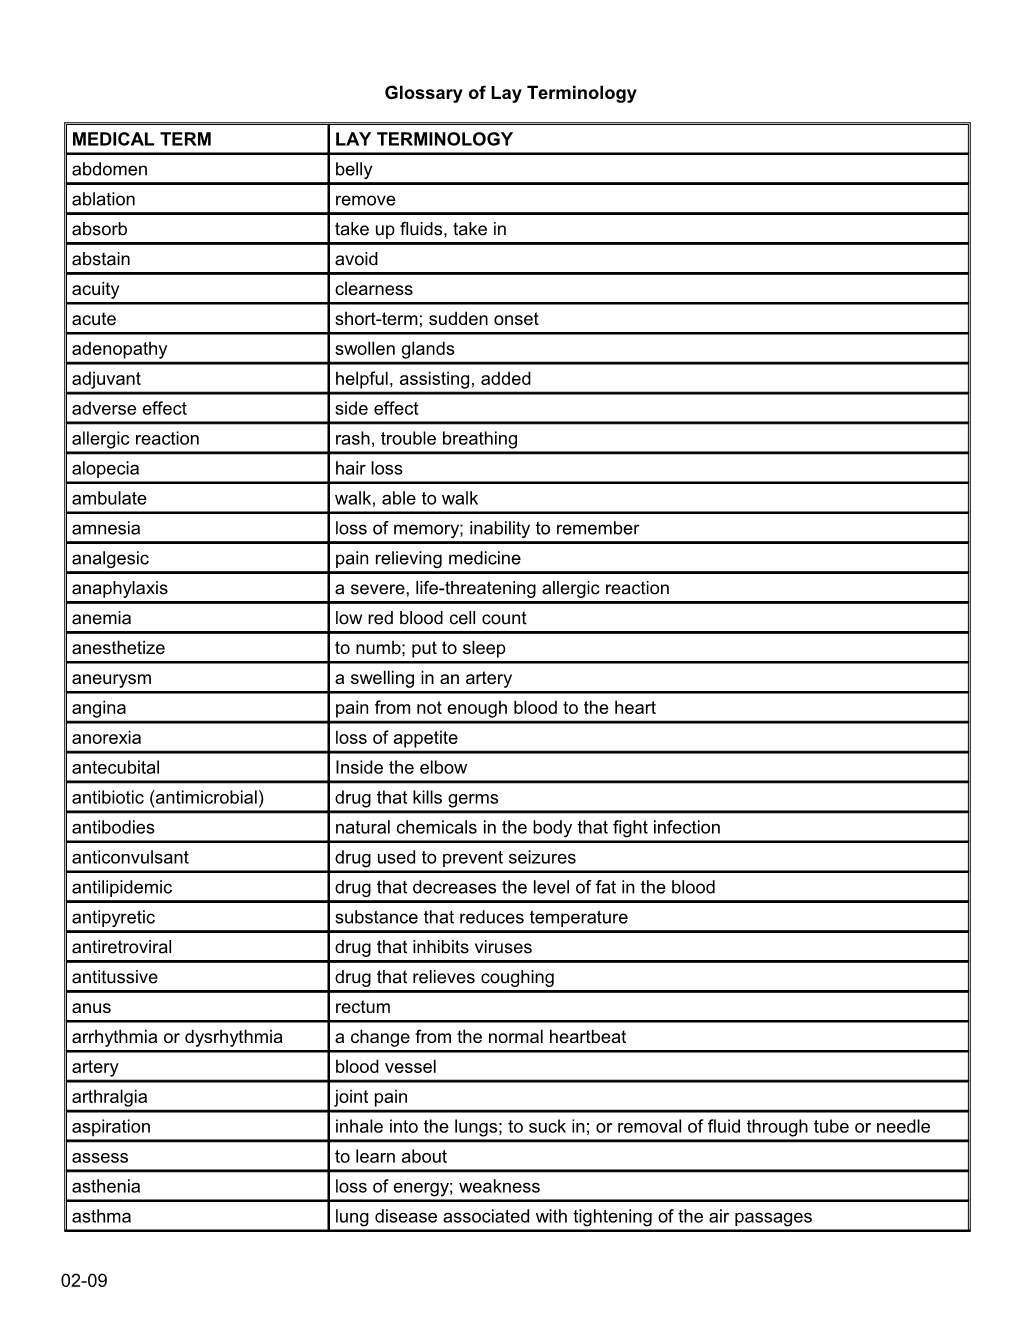 Lay Terminology Glossary